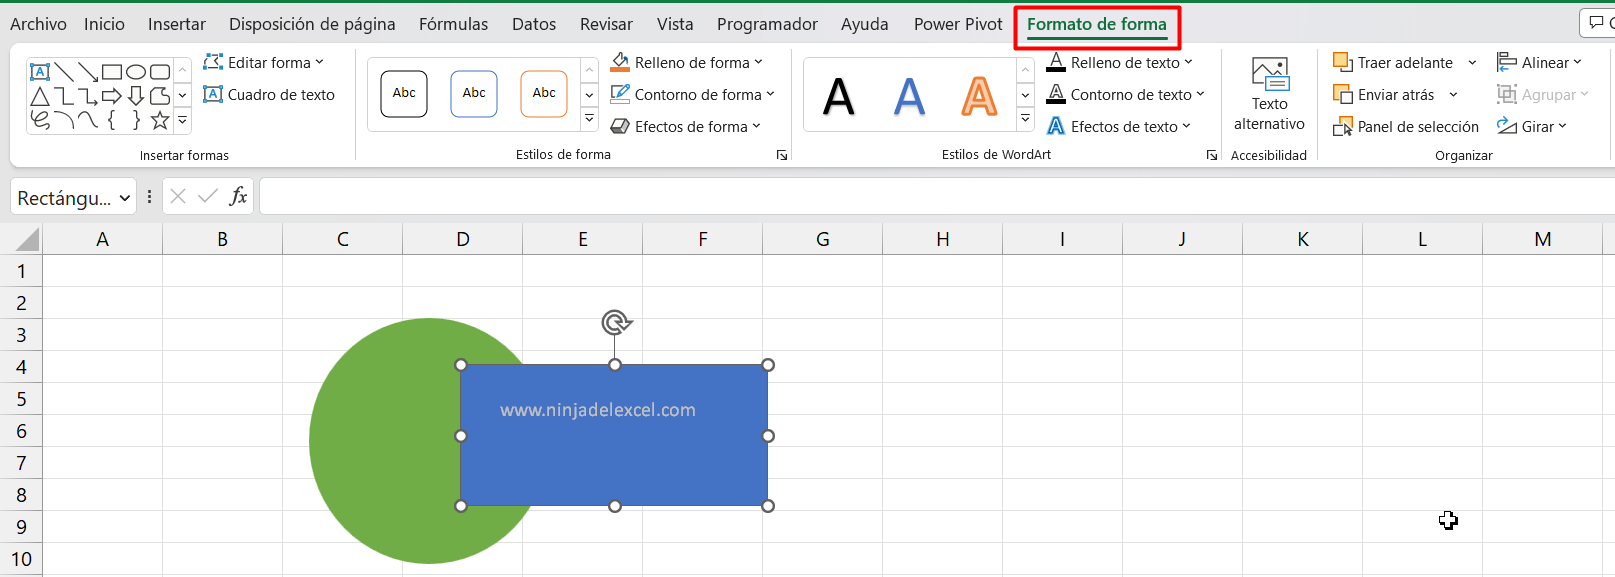 Superponer Objetos Geométricos en Excel paso a paso